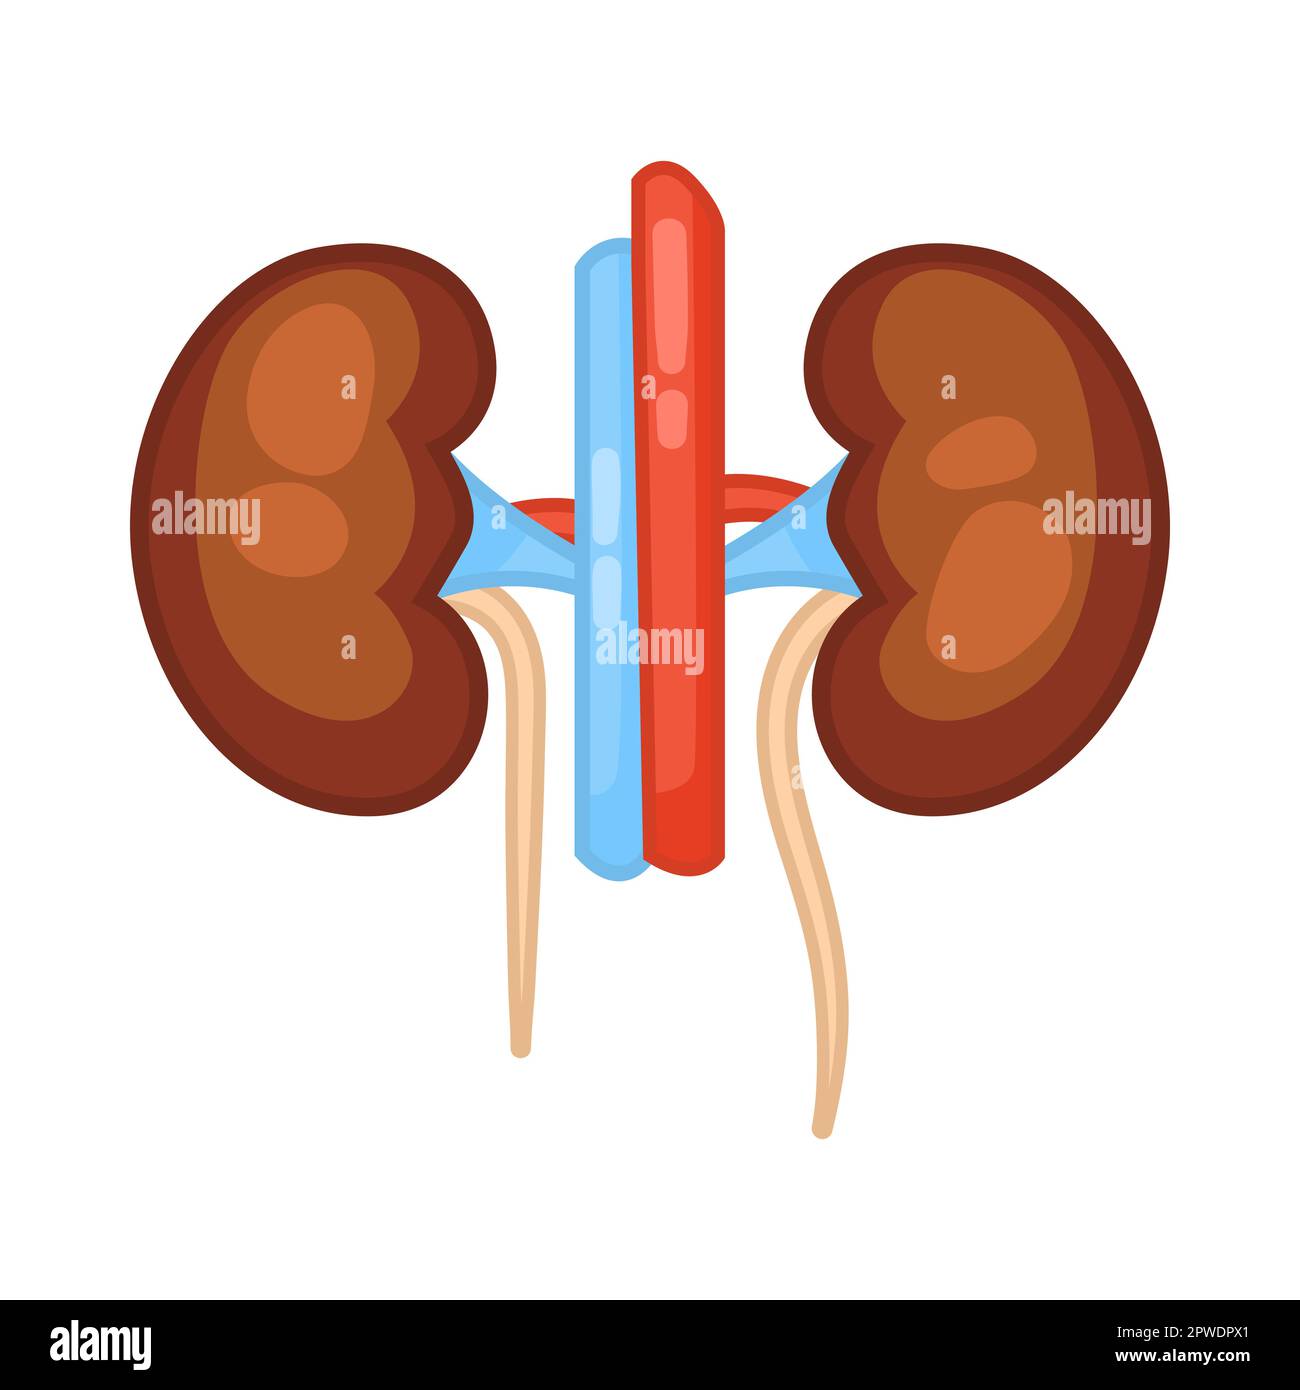 Kidneys of female body vector illustration Stock Vector Image & Art - Alamy